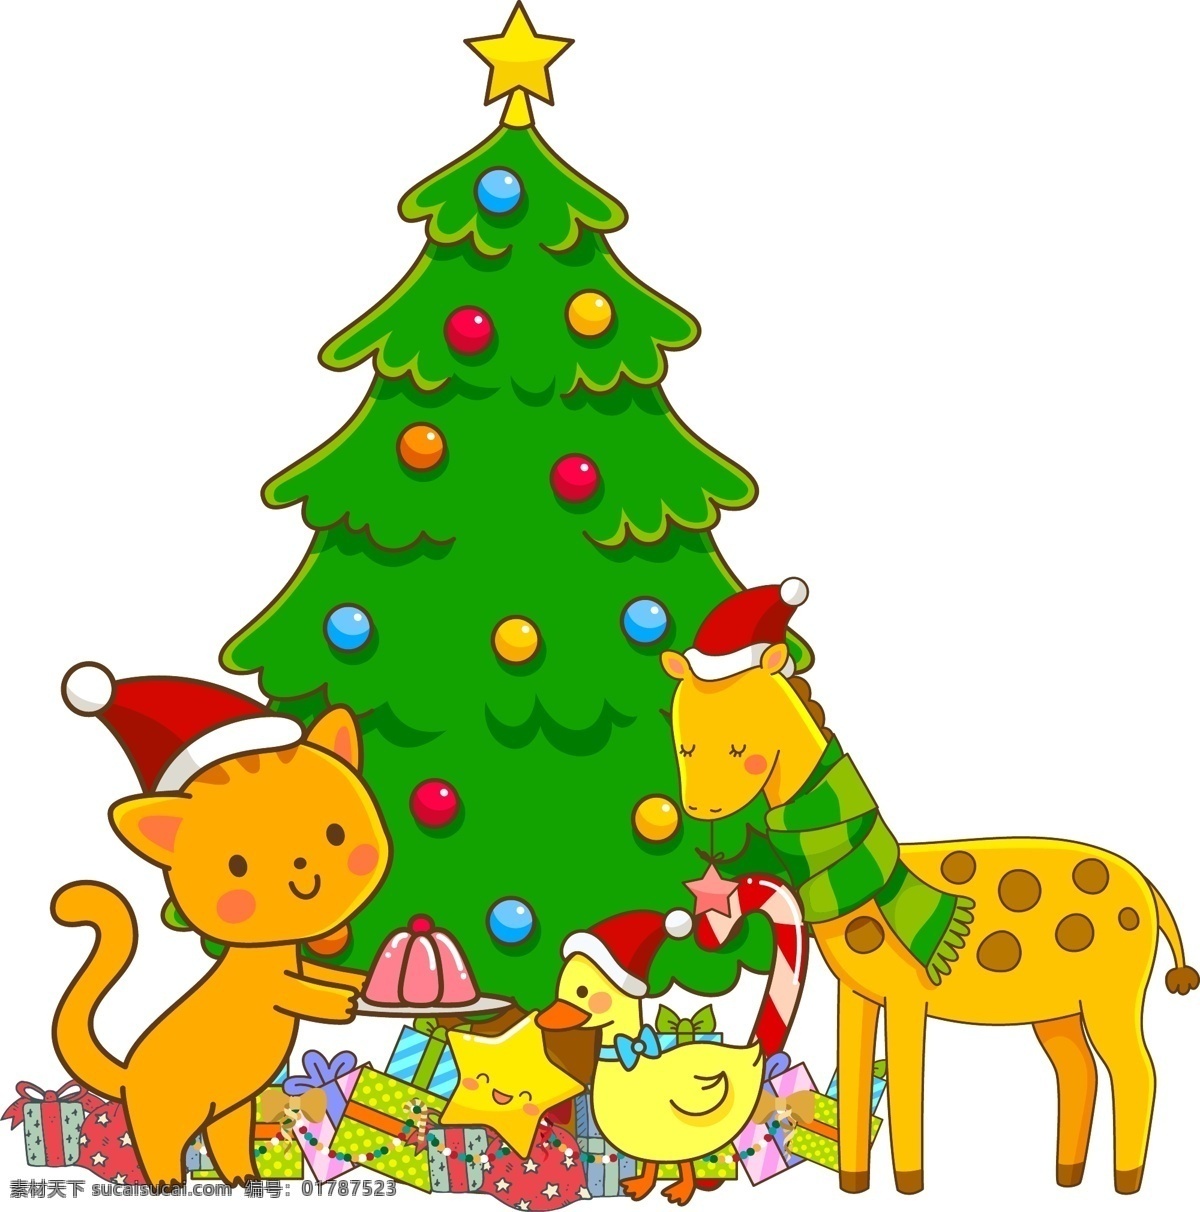 卡通 手绘 圣诞节 矢量 插画 矢量图 圣诞树 节日 长颈鹿 卡通手绘 圣诞礼物 小猫 小鸭子 christmas